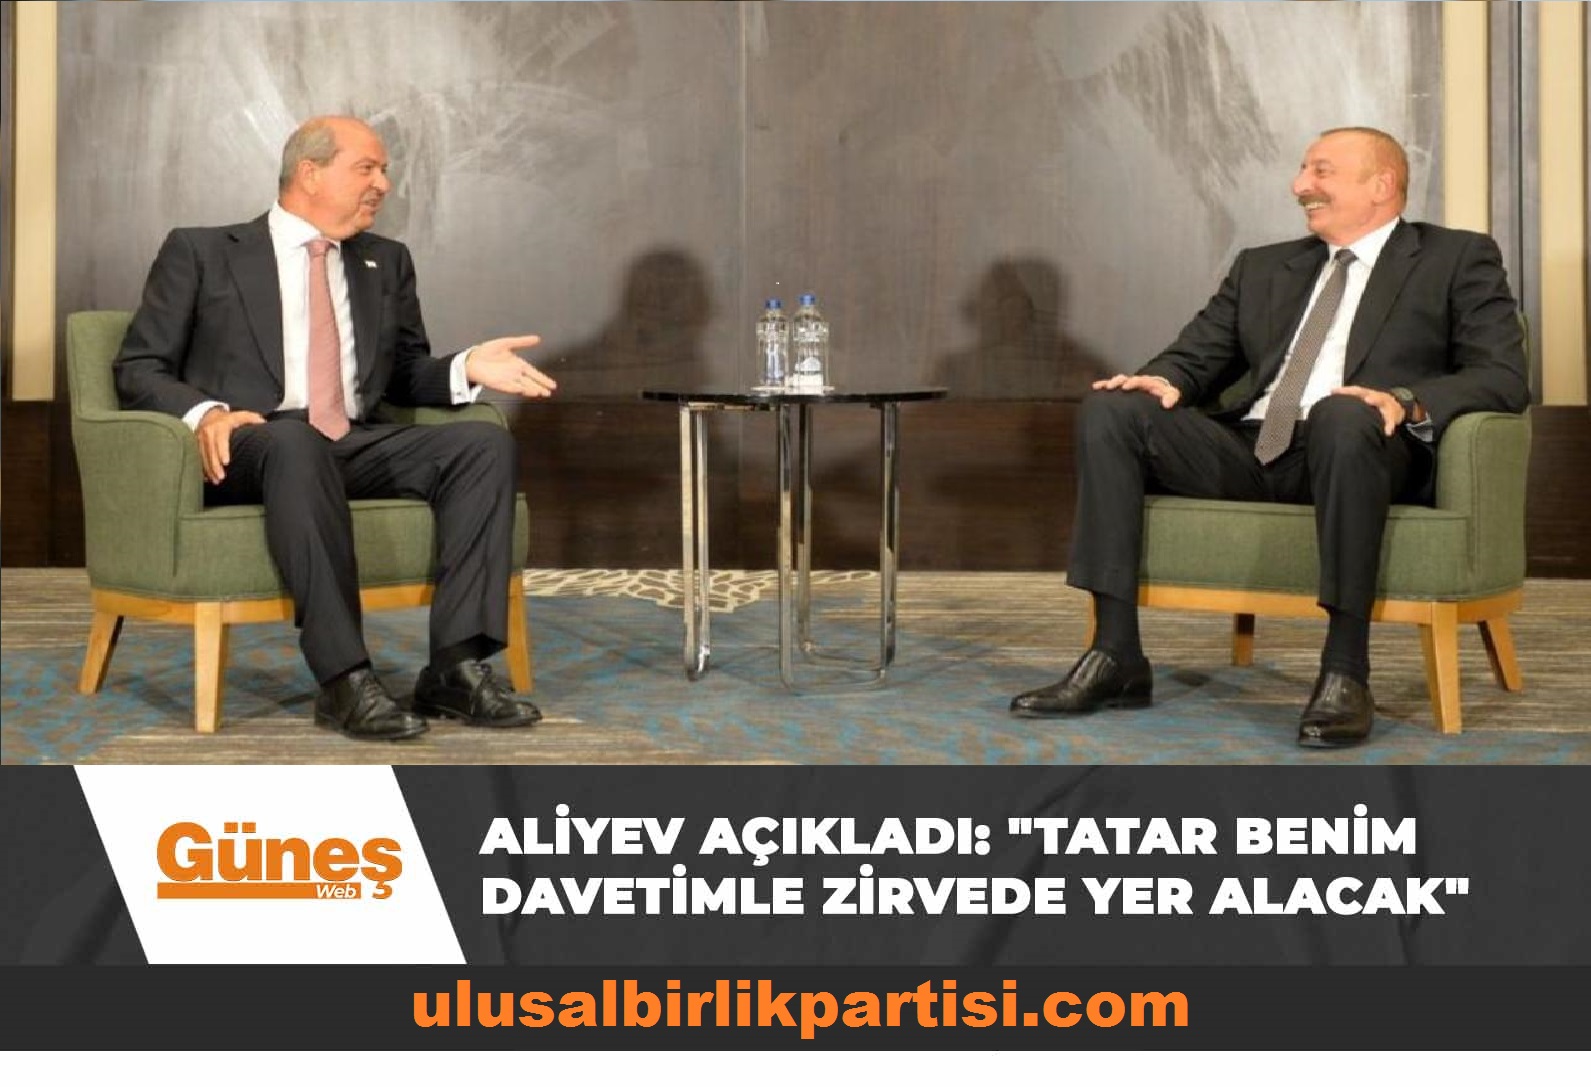 You are currently viewing Aliyev açıkladı: “Tatar benim davetimle zirvede yer alacak”